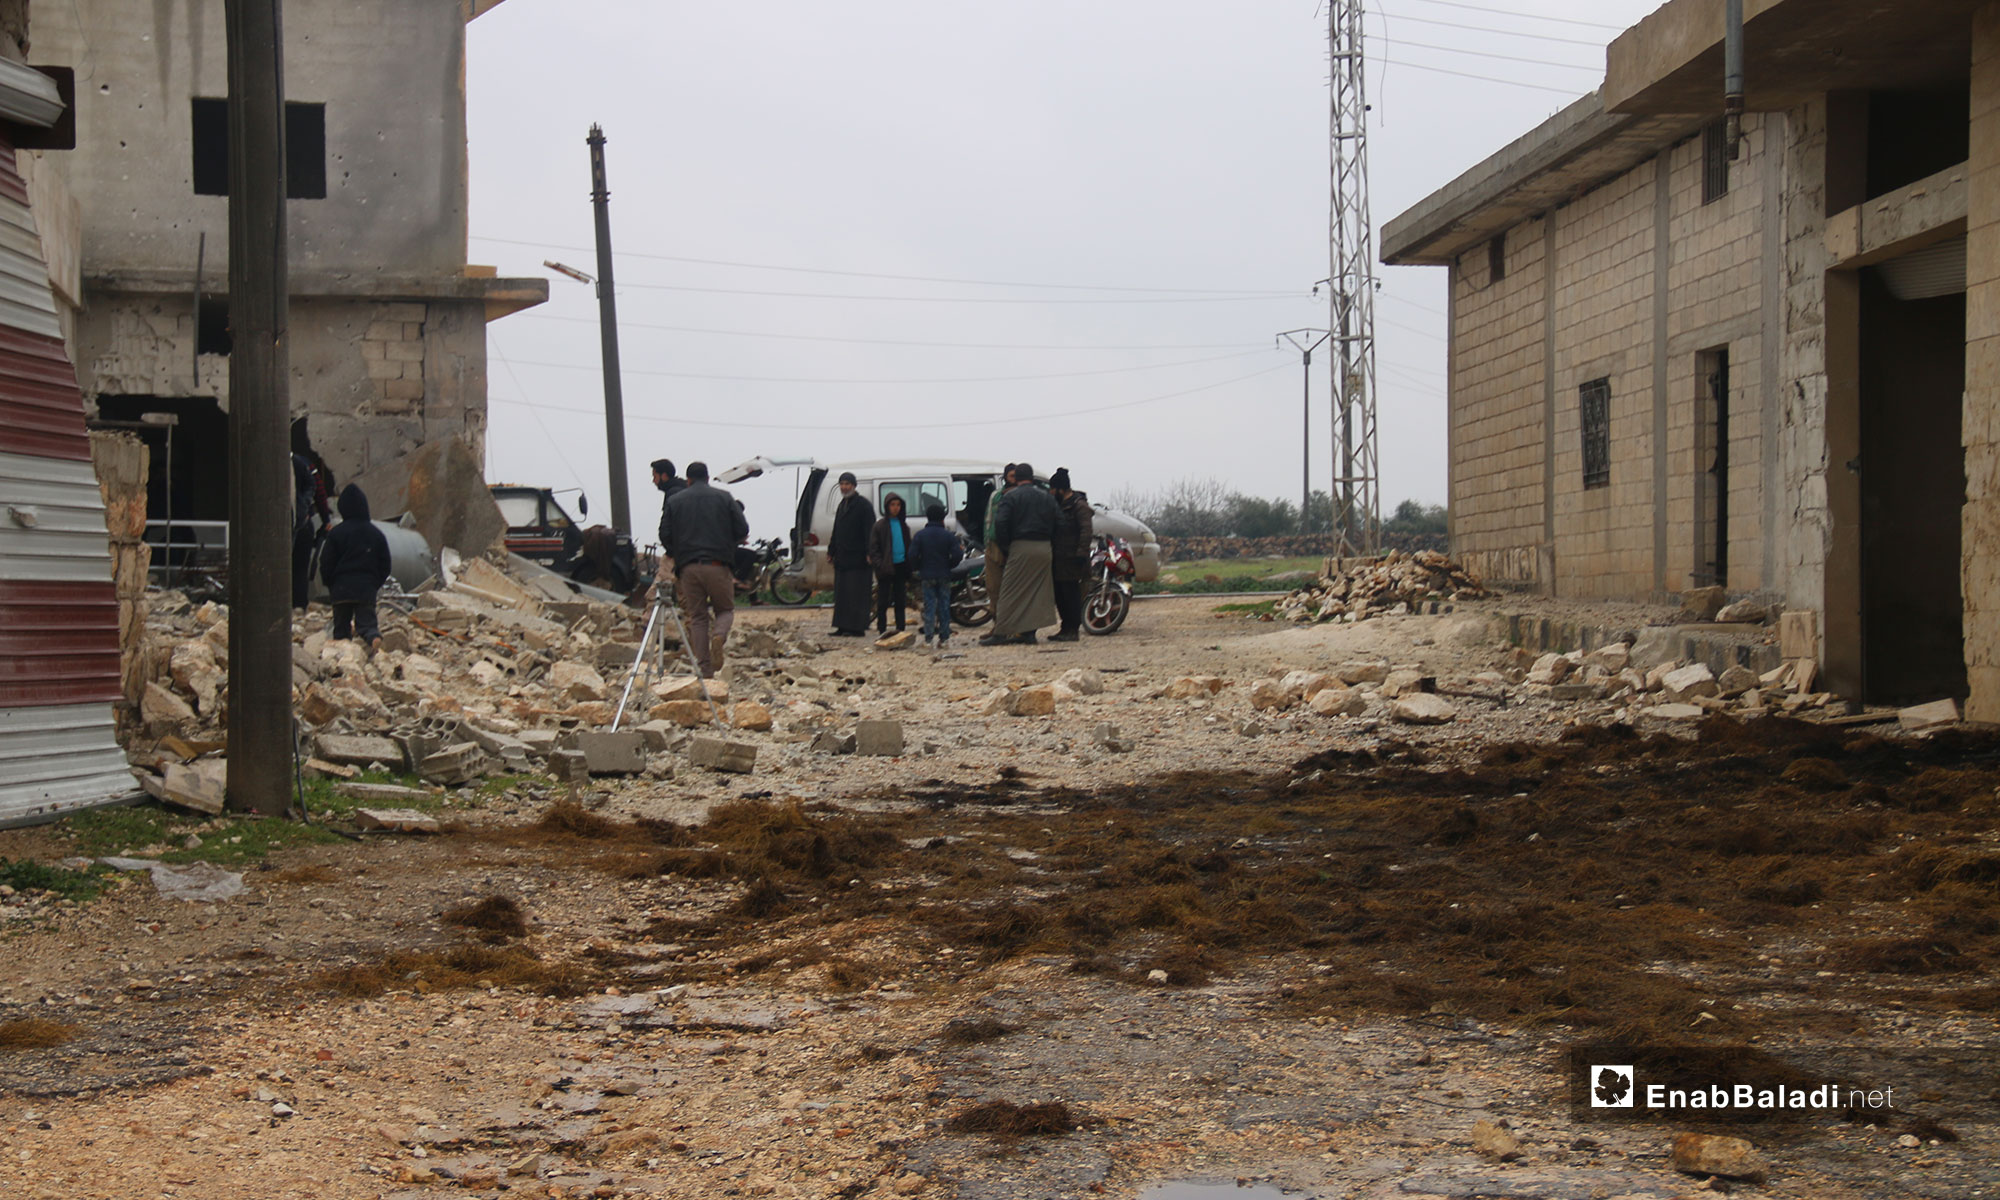 الدمار الذي خلفه القصف على بلدة جرجناز جنوبي إدلب - 7 من شباط 2019 (عنب بلدي)